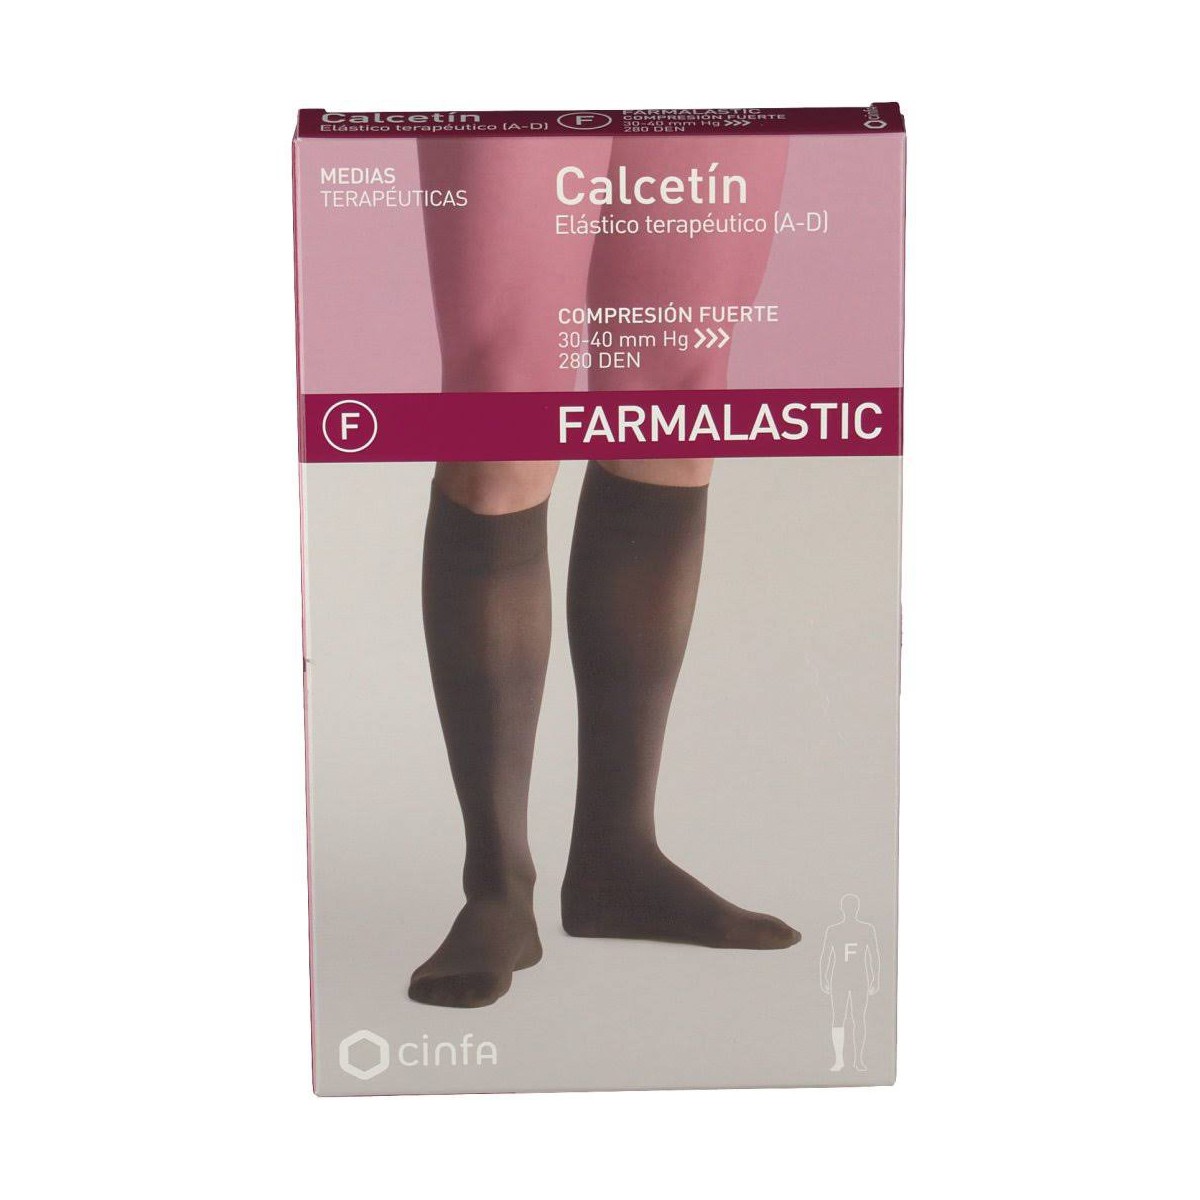 Farmalastic Calcetín compresión fuerte (30-40 mmHg) NEGRO 1 unidad.﻿